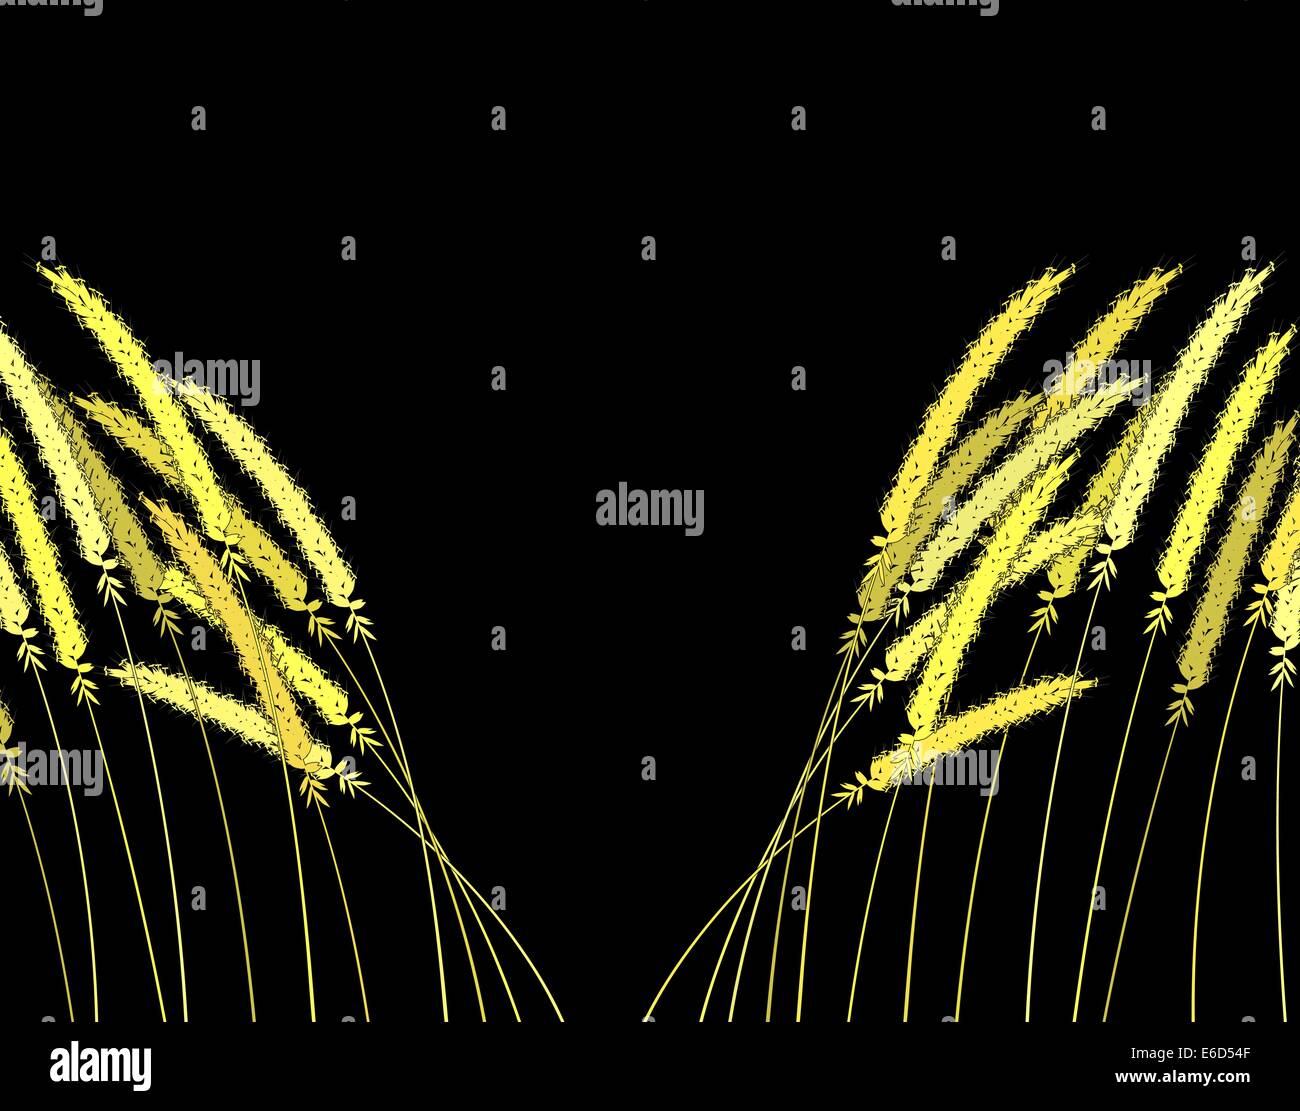 Bearbeitbares Vektor-Illustration von Grassheads auseinander biegen Stock Vektor